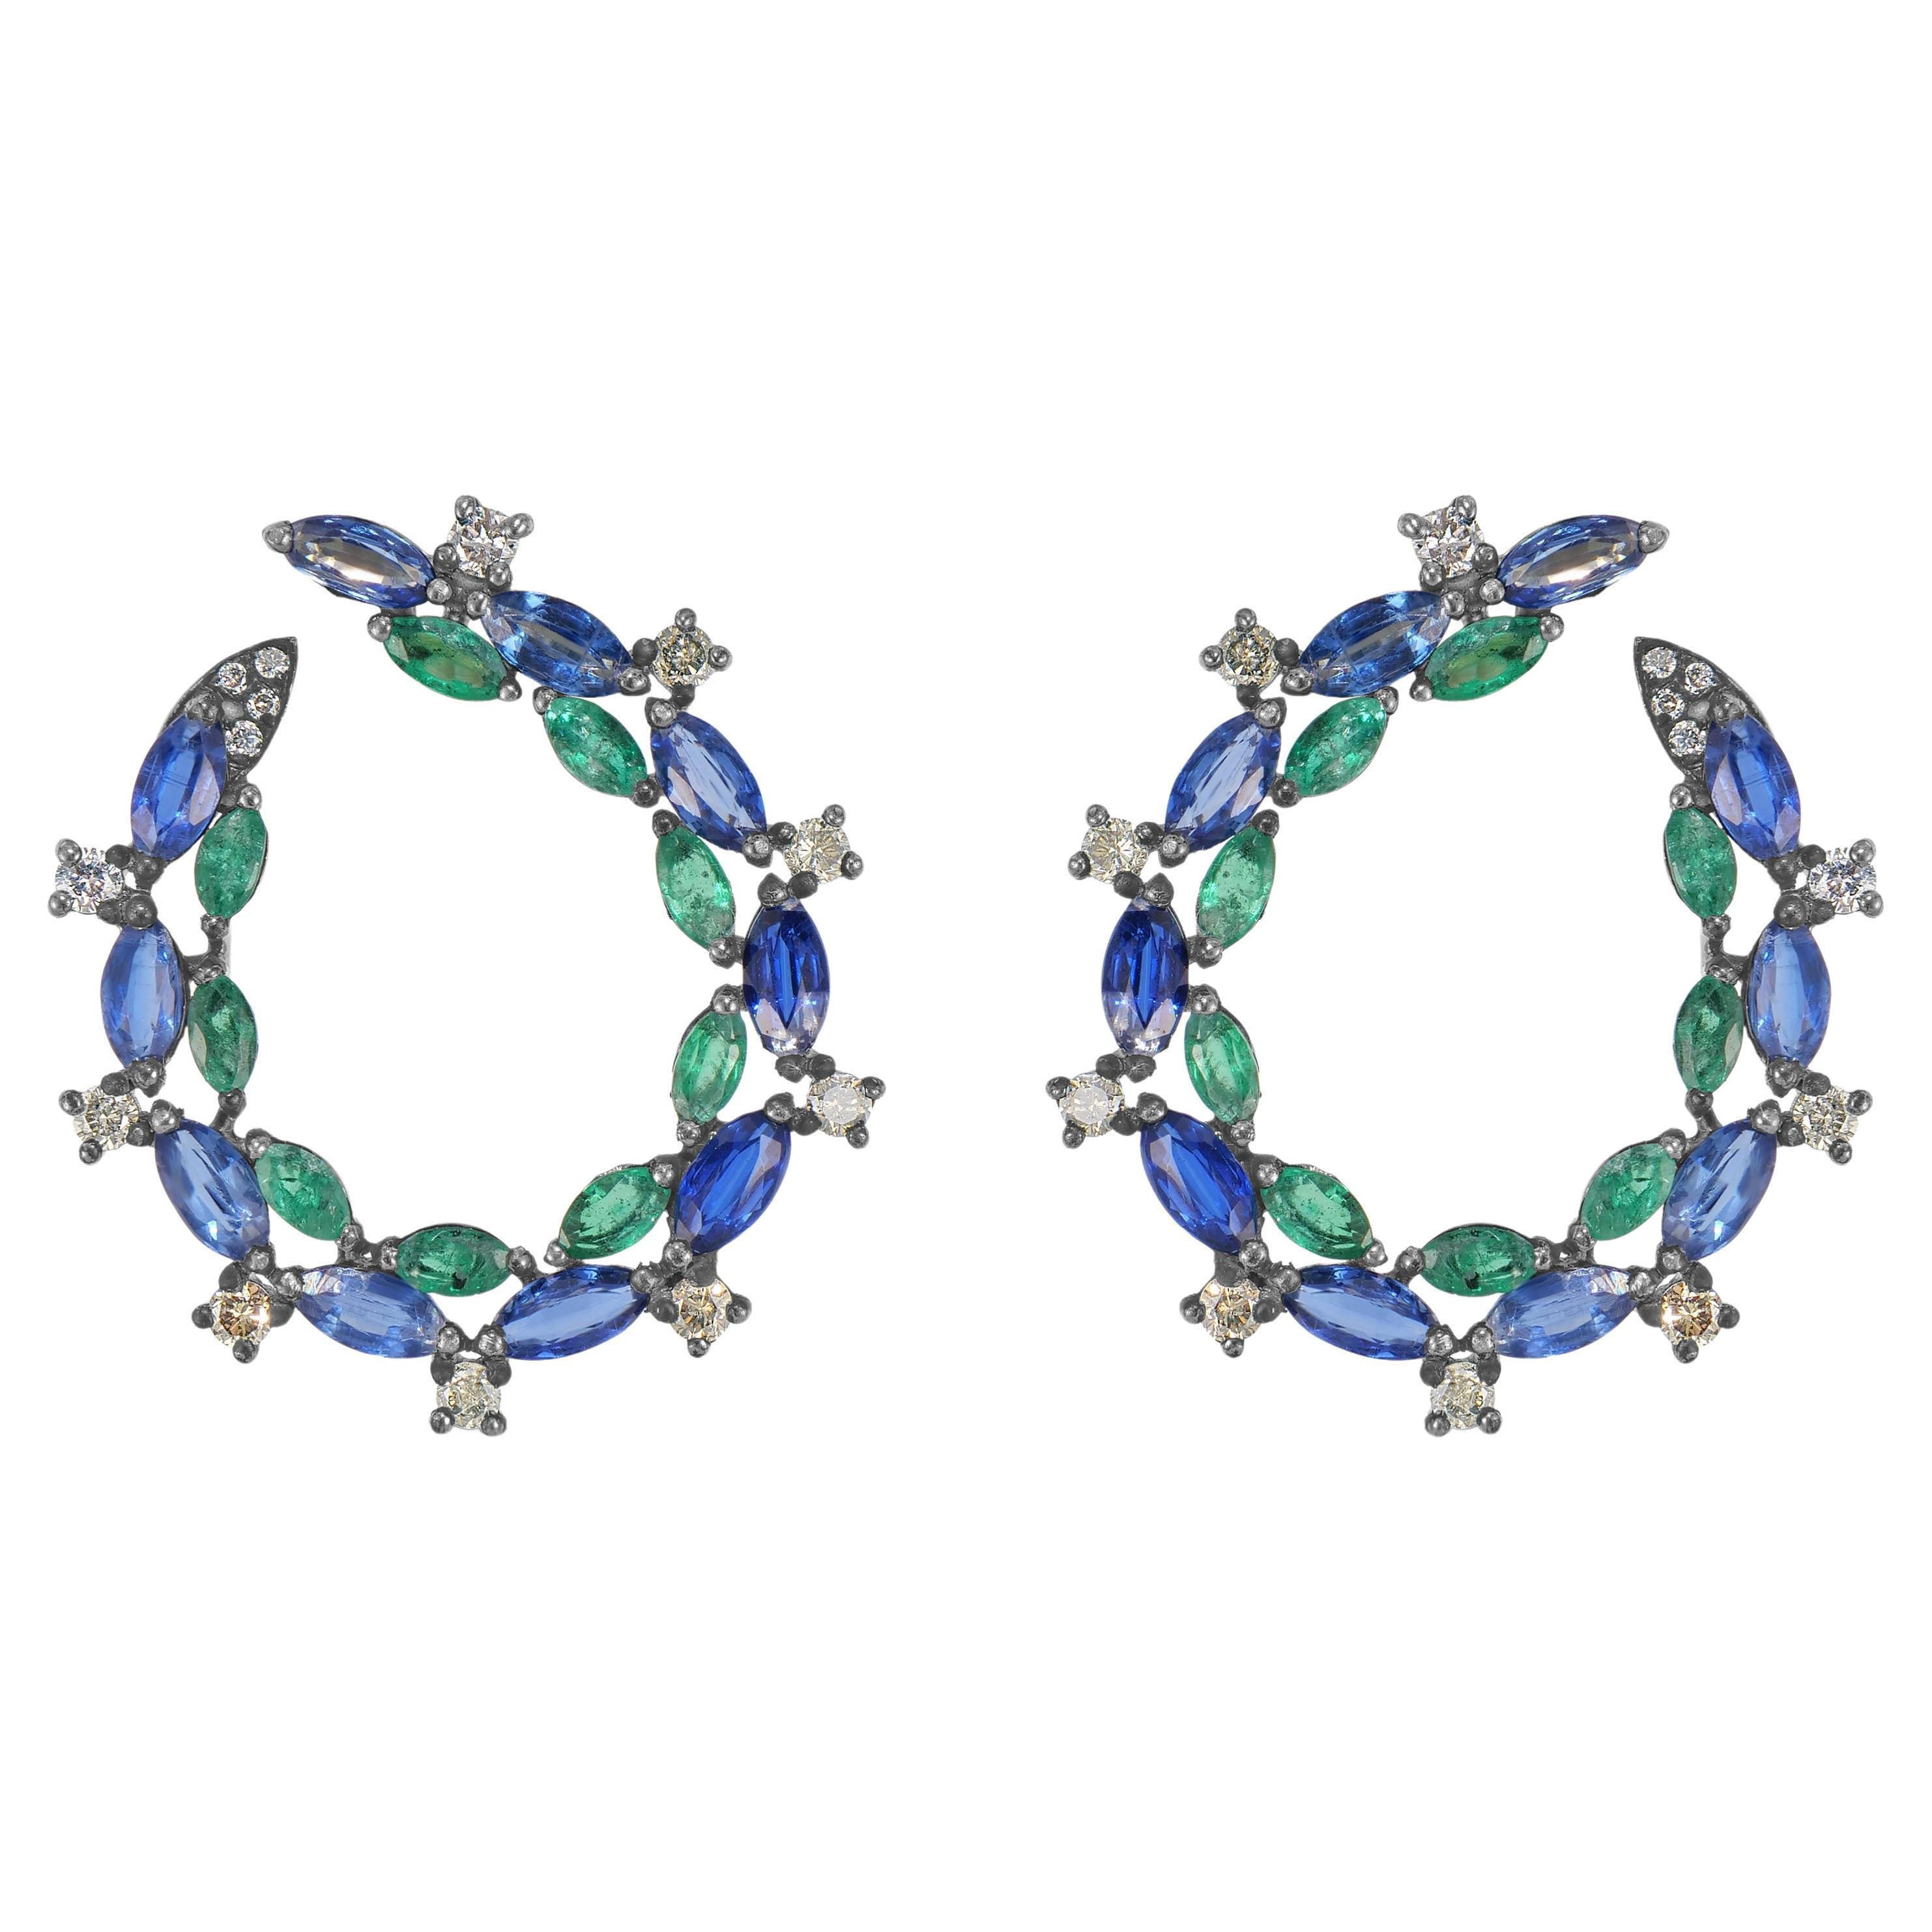 Victorian 6.3 Cttw. Emerald, Kyanite and Diamond Hoop Earrings in18k/925